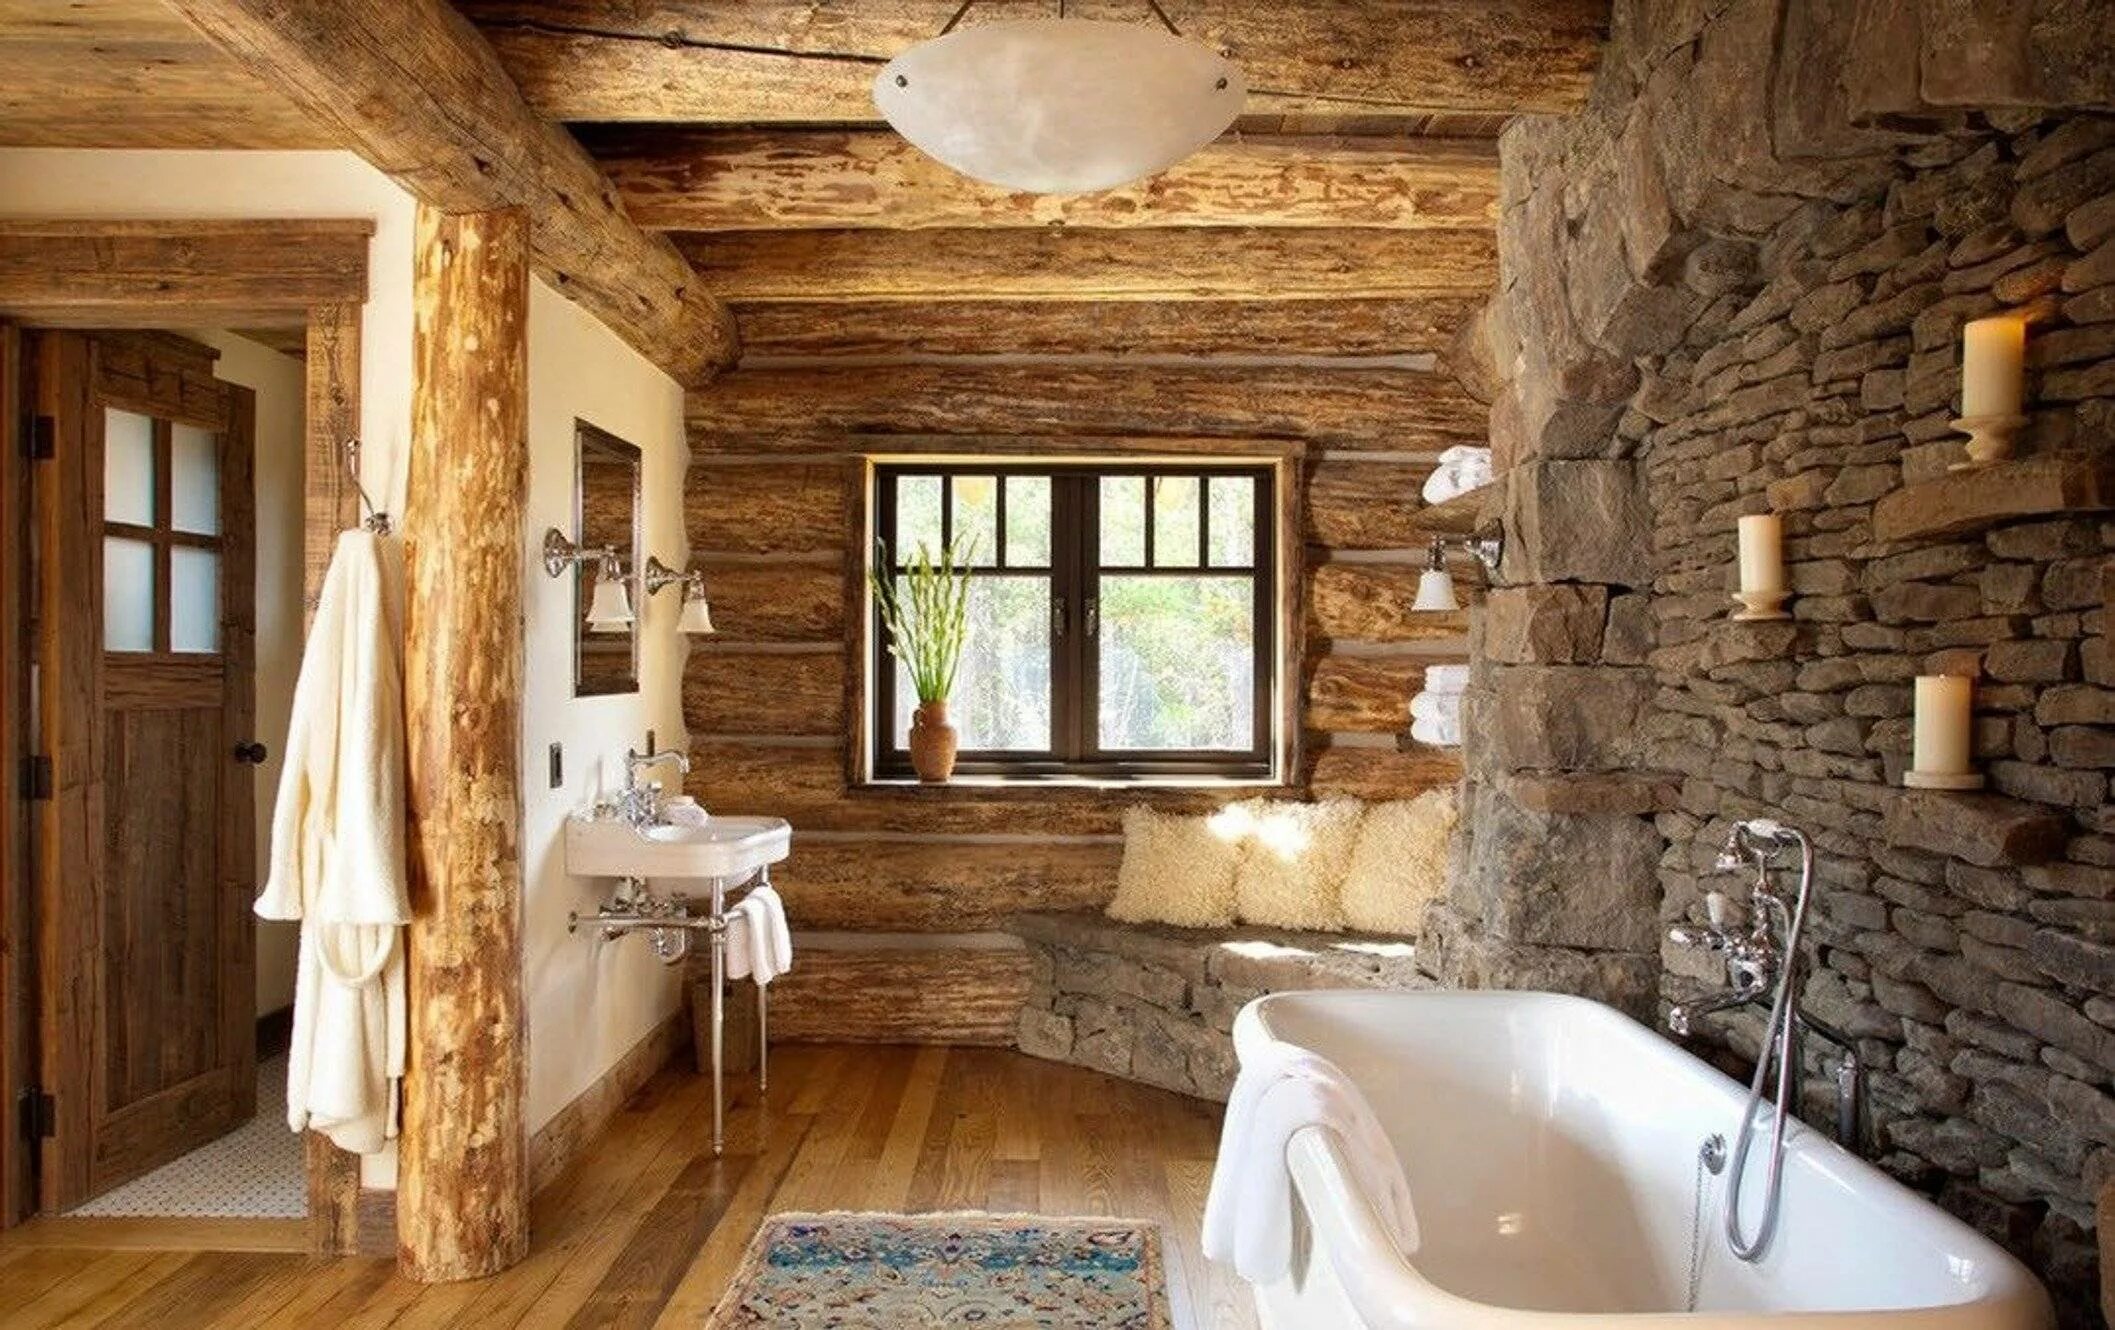 Сан УЗЕЛТВ деревенском стиле. Отделка комнаты. Ванная в деревянном доме. Ваееая в деревянном доме.